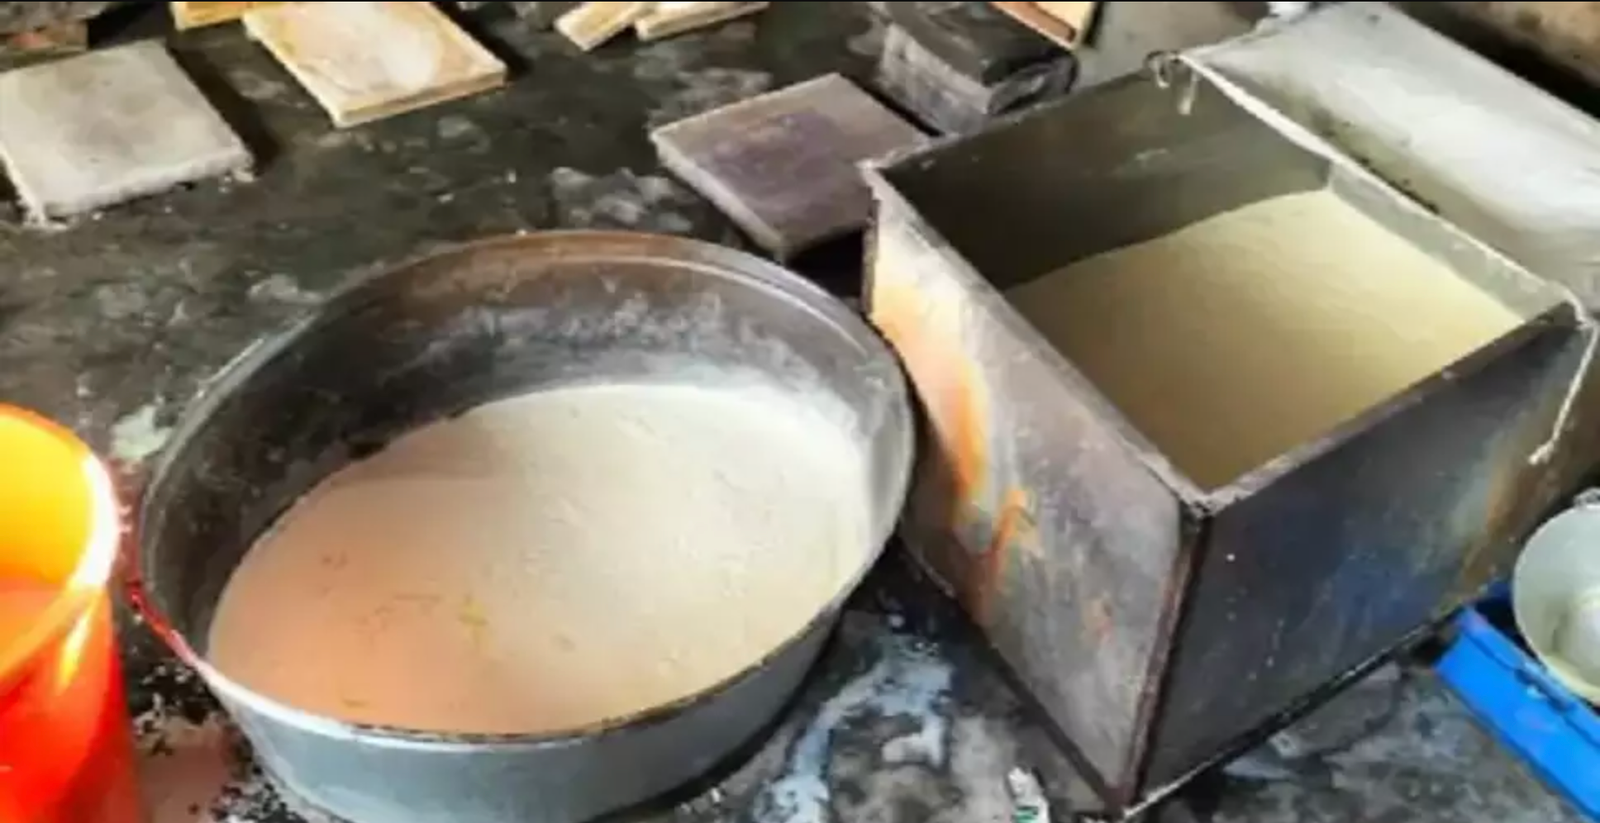 Jaipur News: डिटर्जेंट पाउडर से मिलावटी पनीर उत्पादन करने वालों पर कार्रवाई, 600 किलो मिलावटी पनीर जब्त